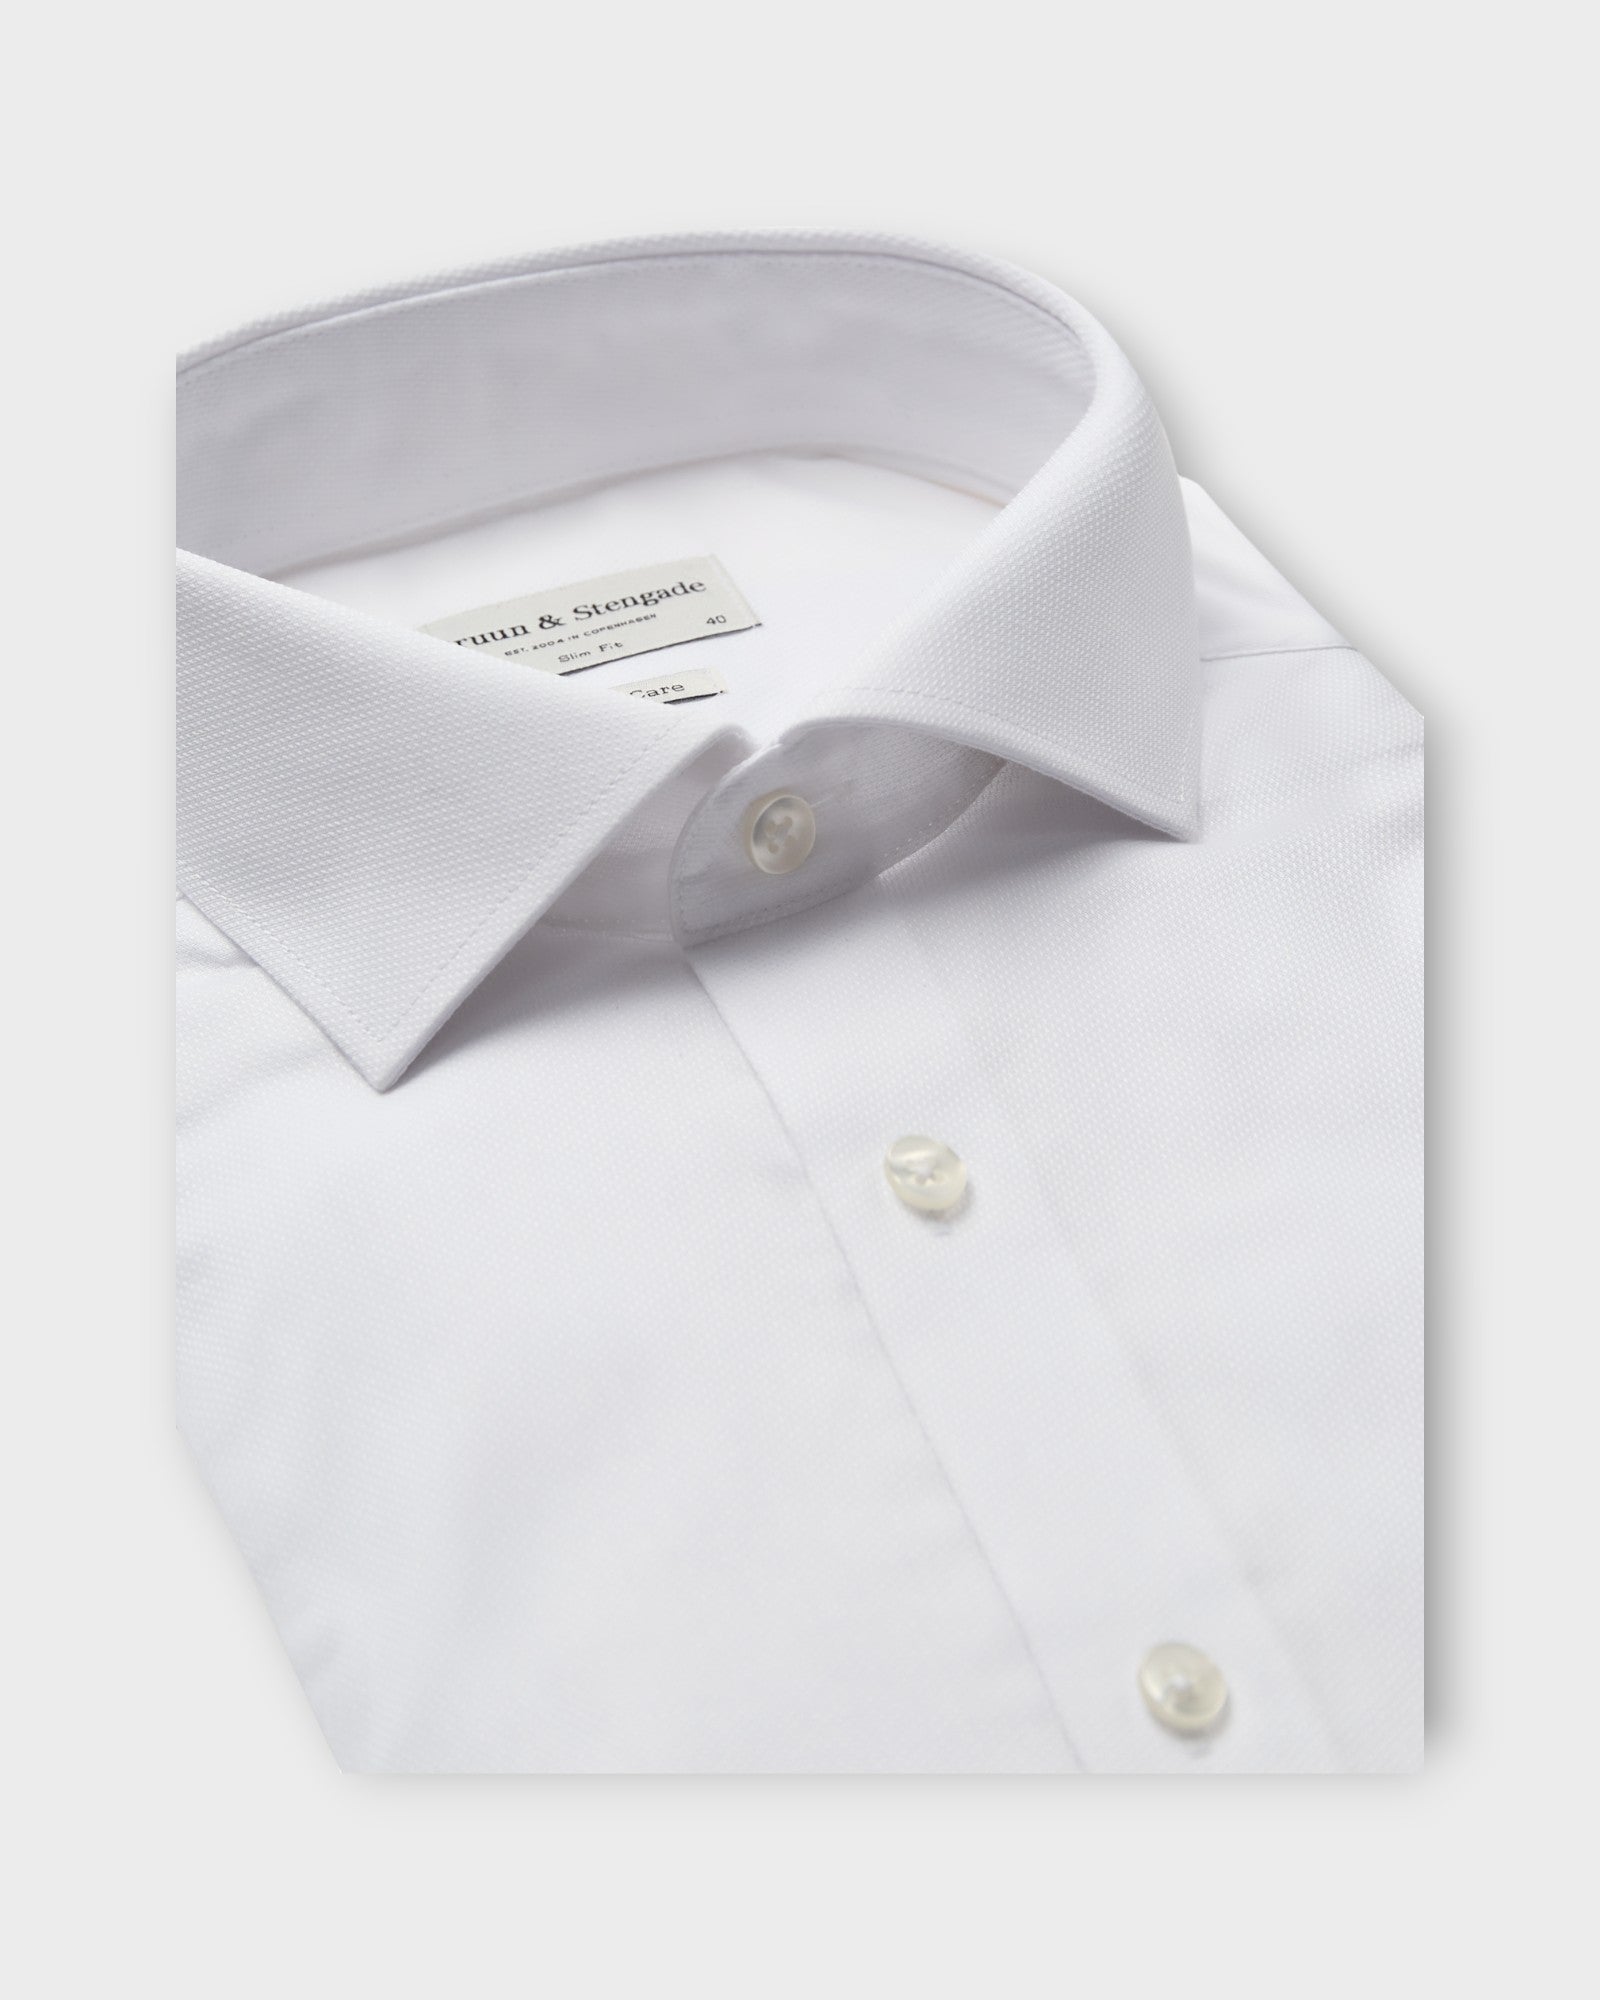 Reed Slim Fit Shirt White fra Bruun og Stengade. Hvid langærmet herre skjorte. Her set i closeup.